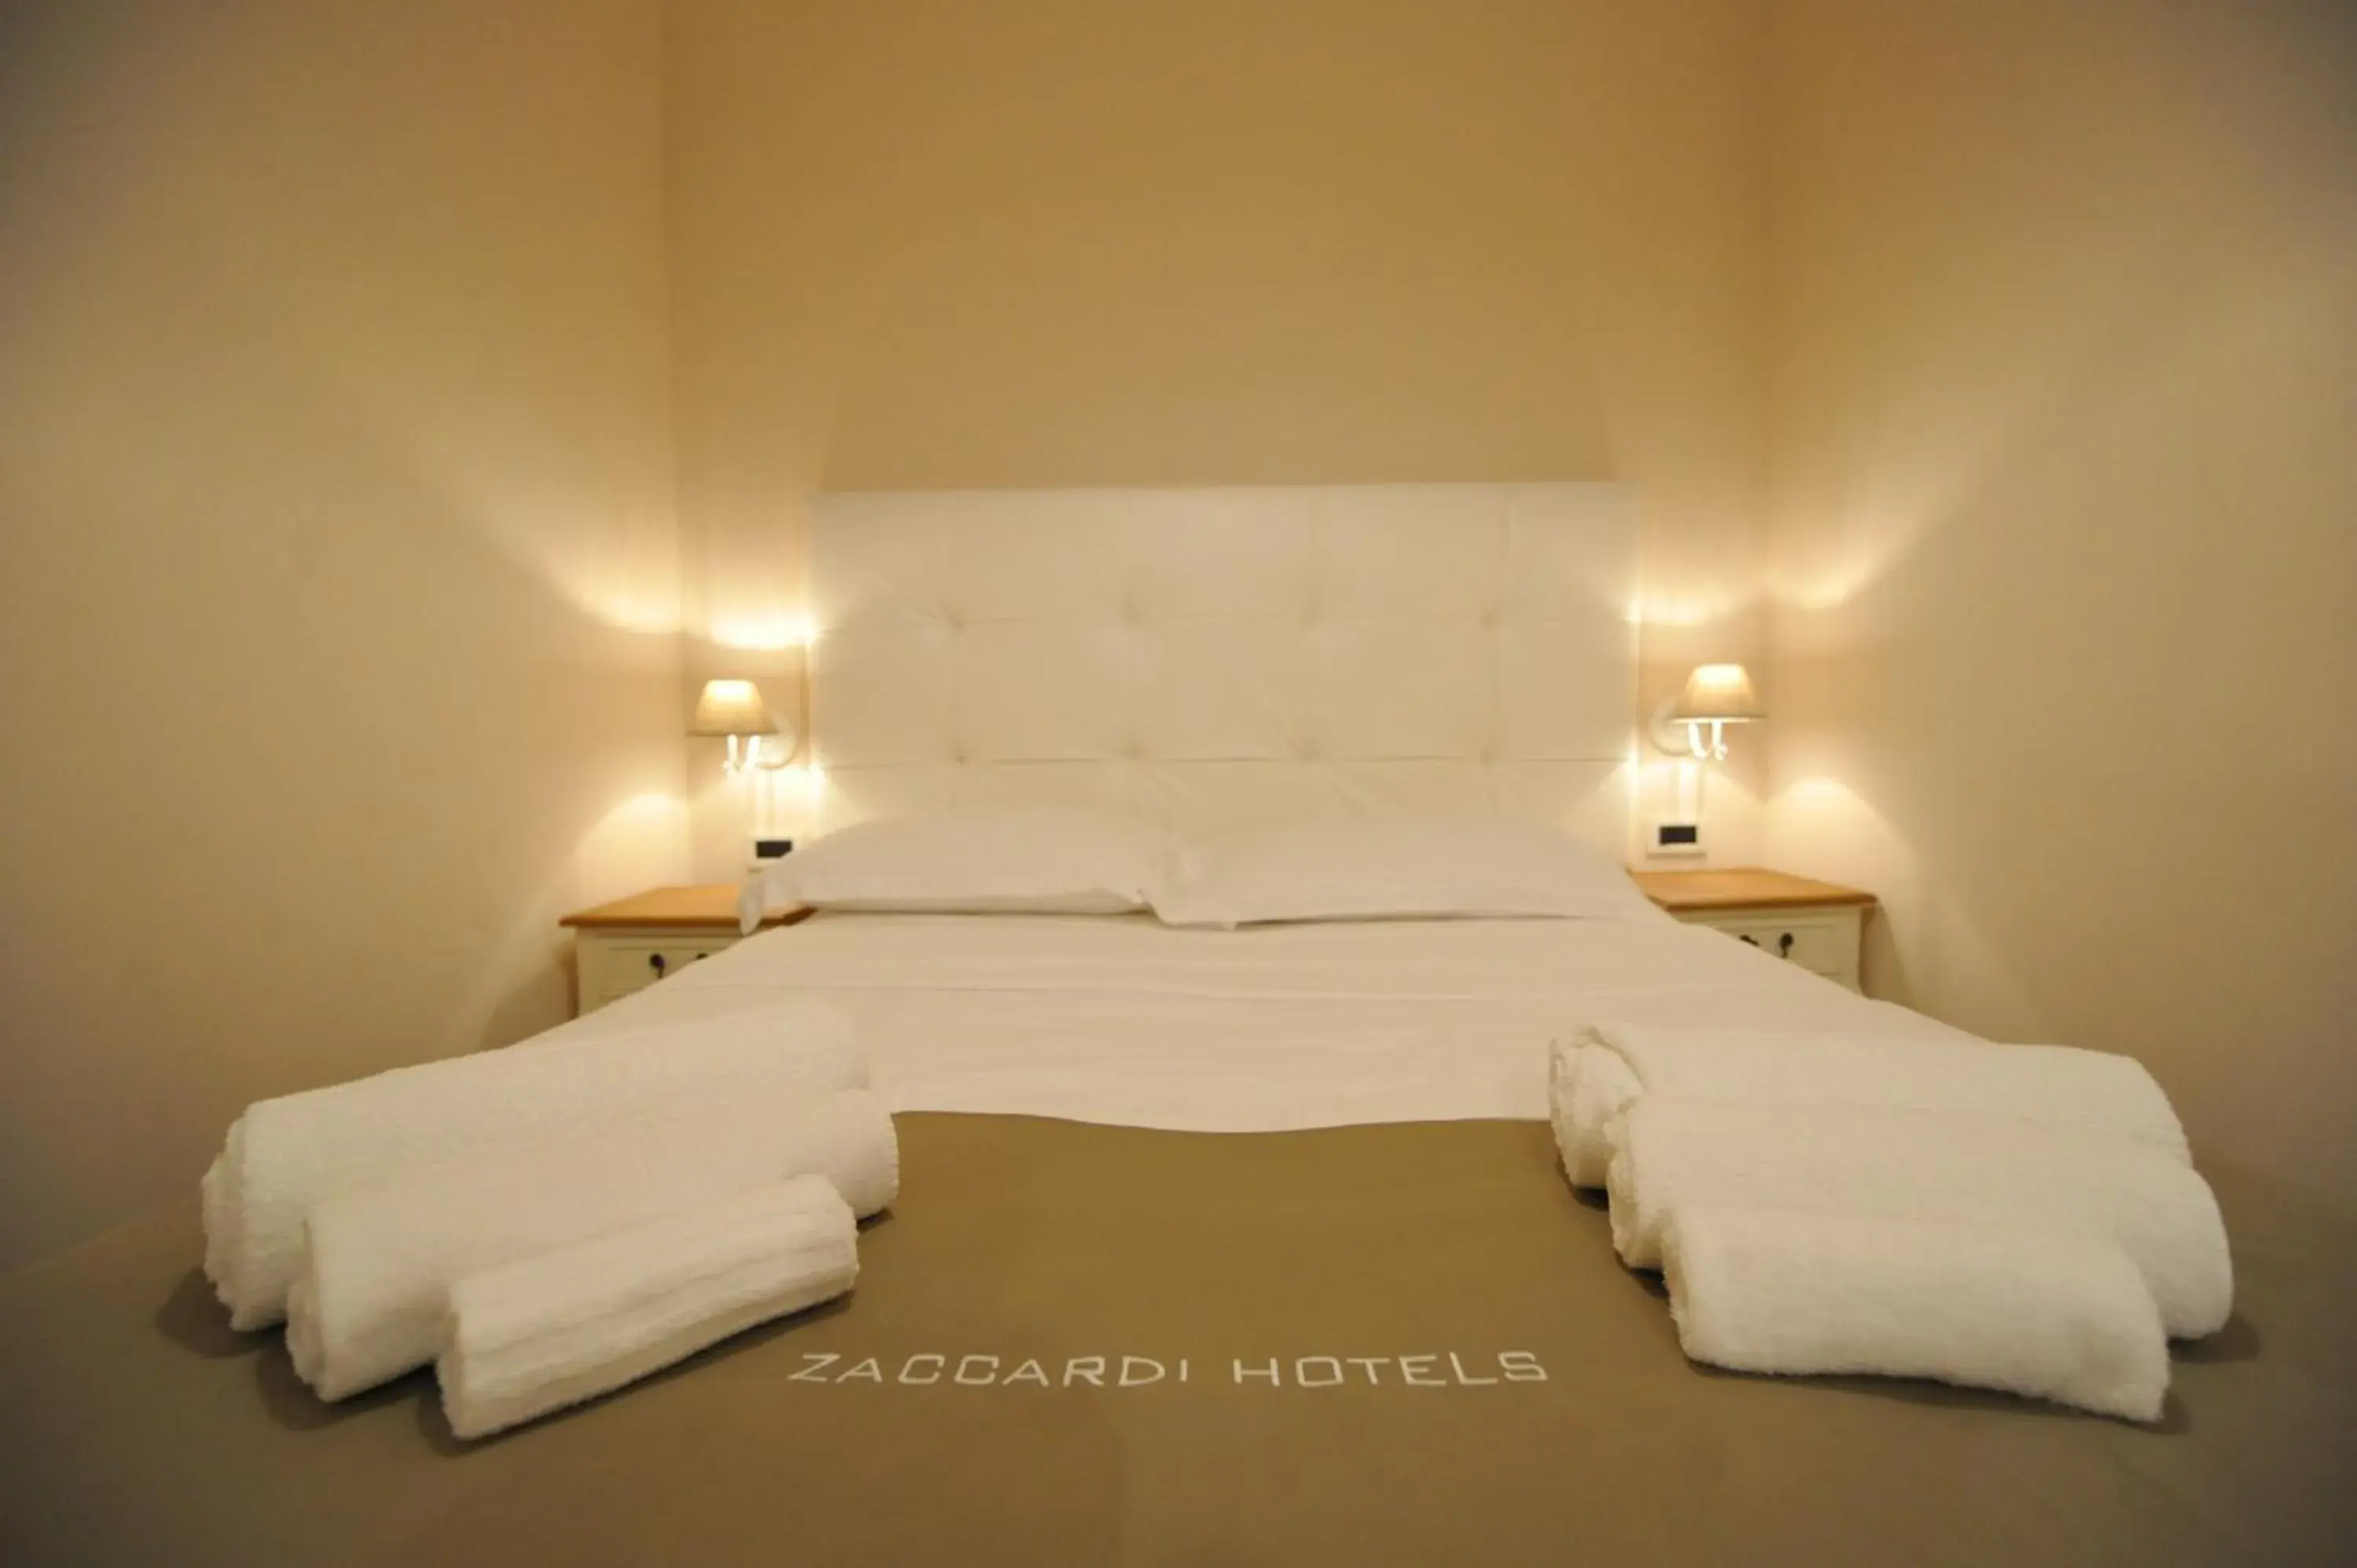 Bed in Villa Zaccardi